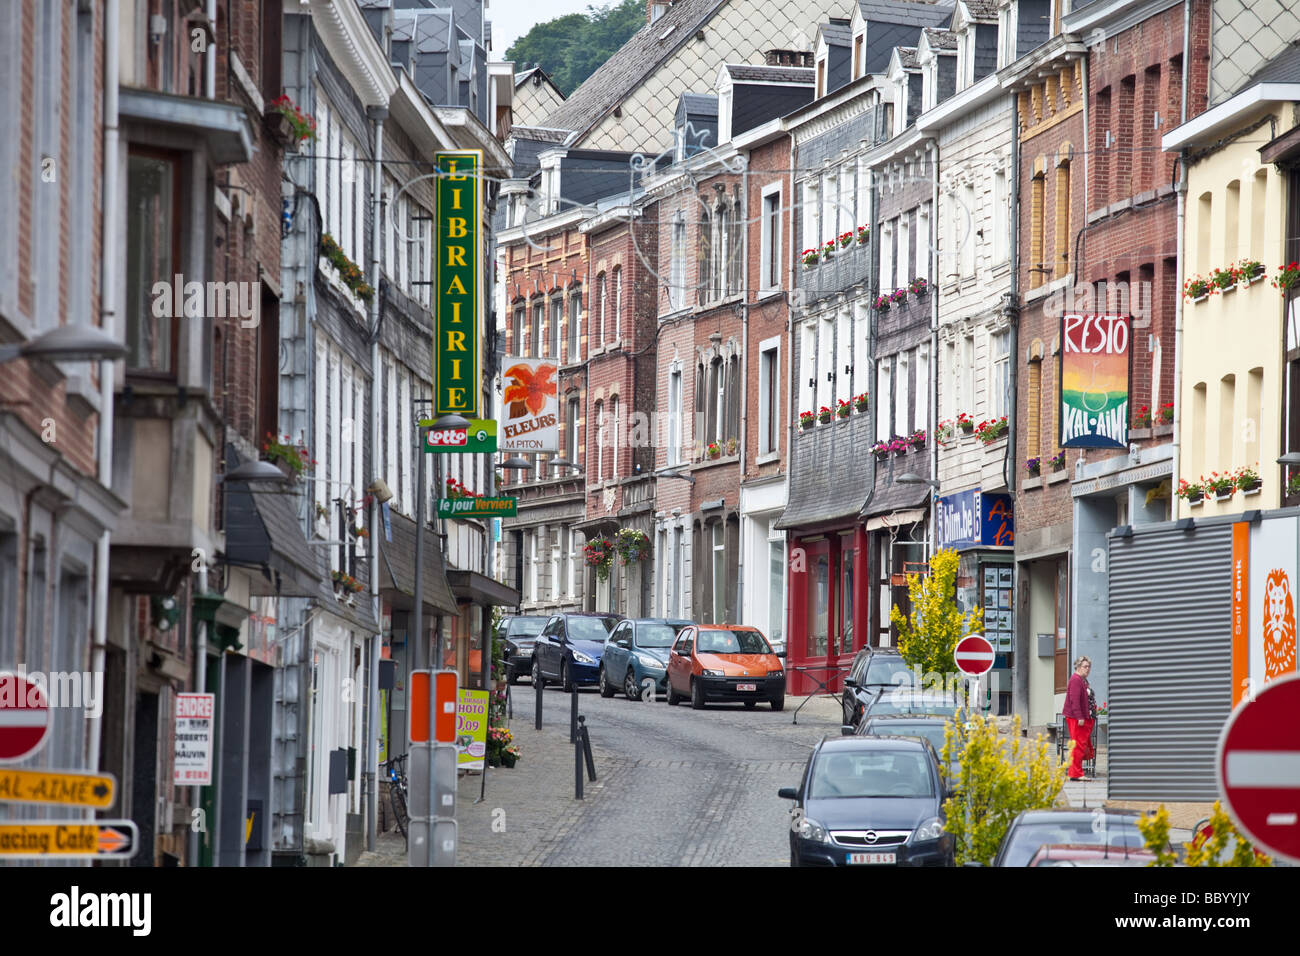 Stavelot Belgium Immagini e Fotos Stock - Alamy